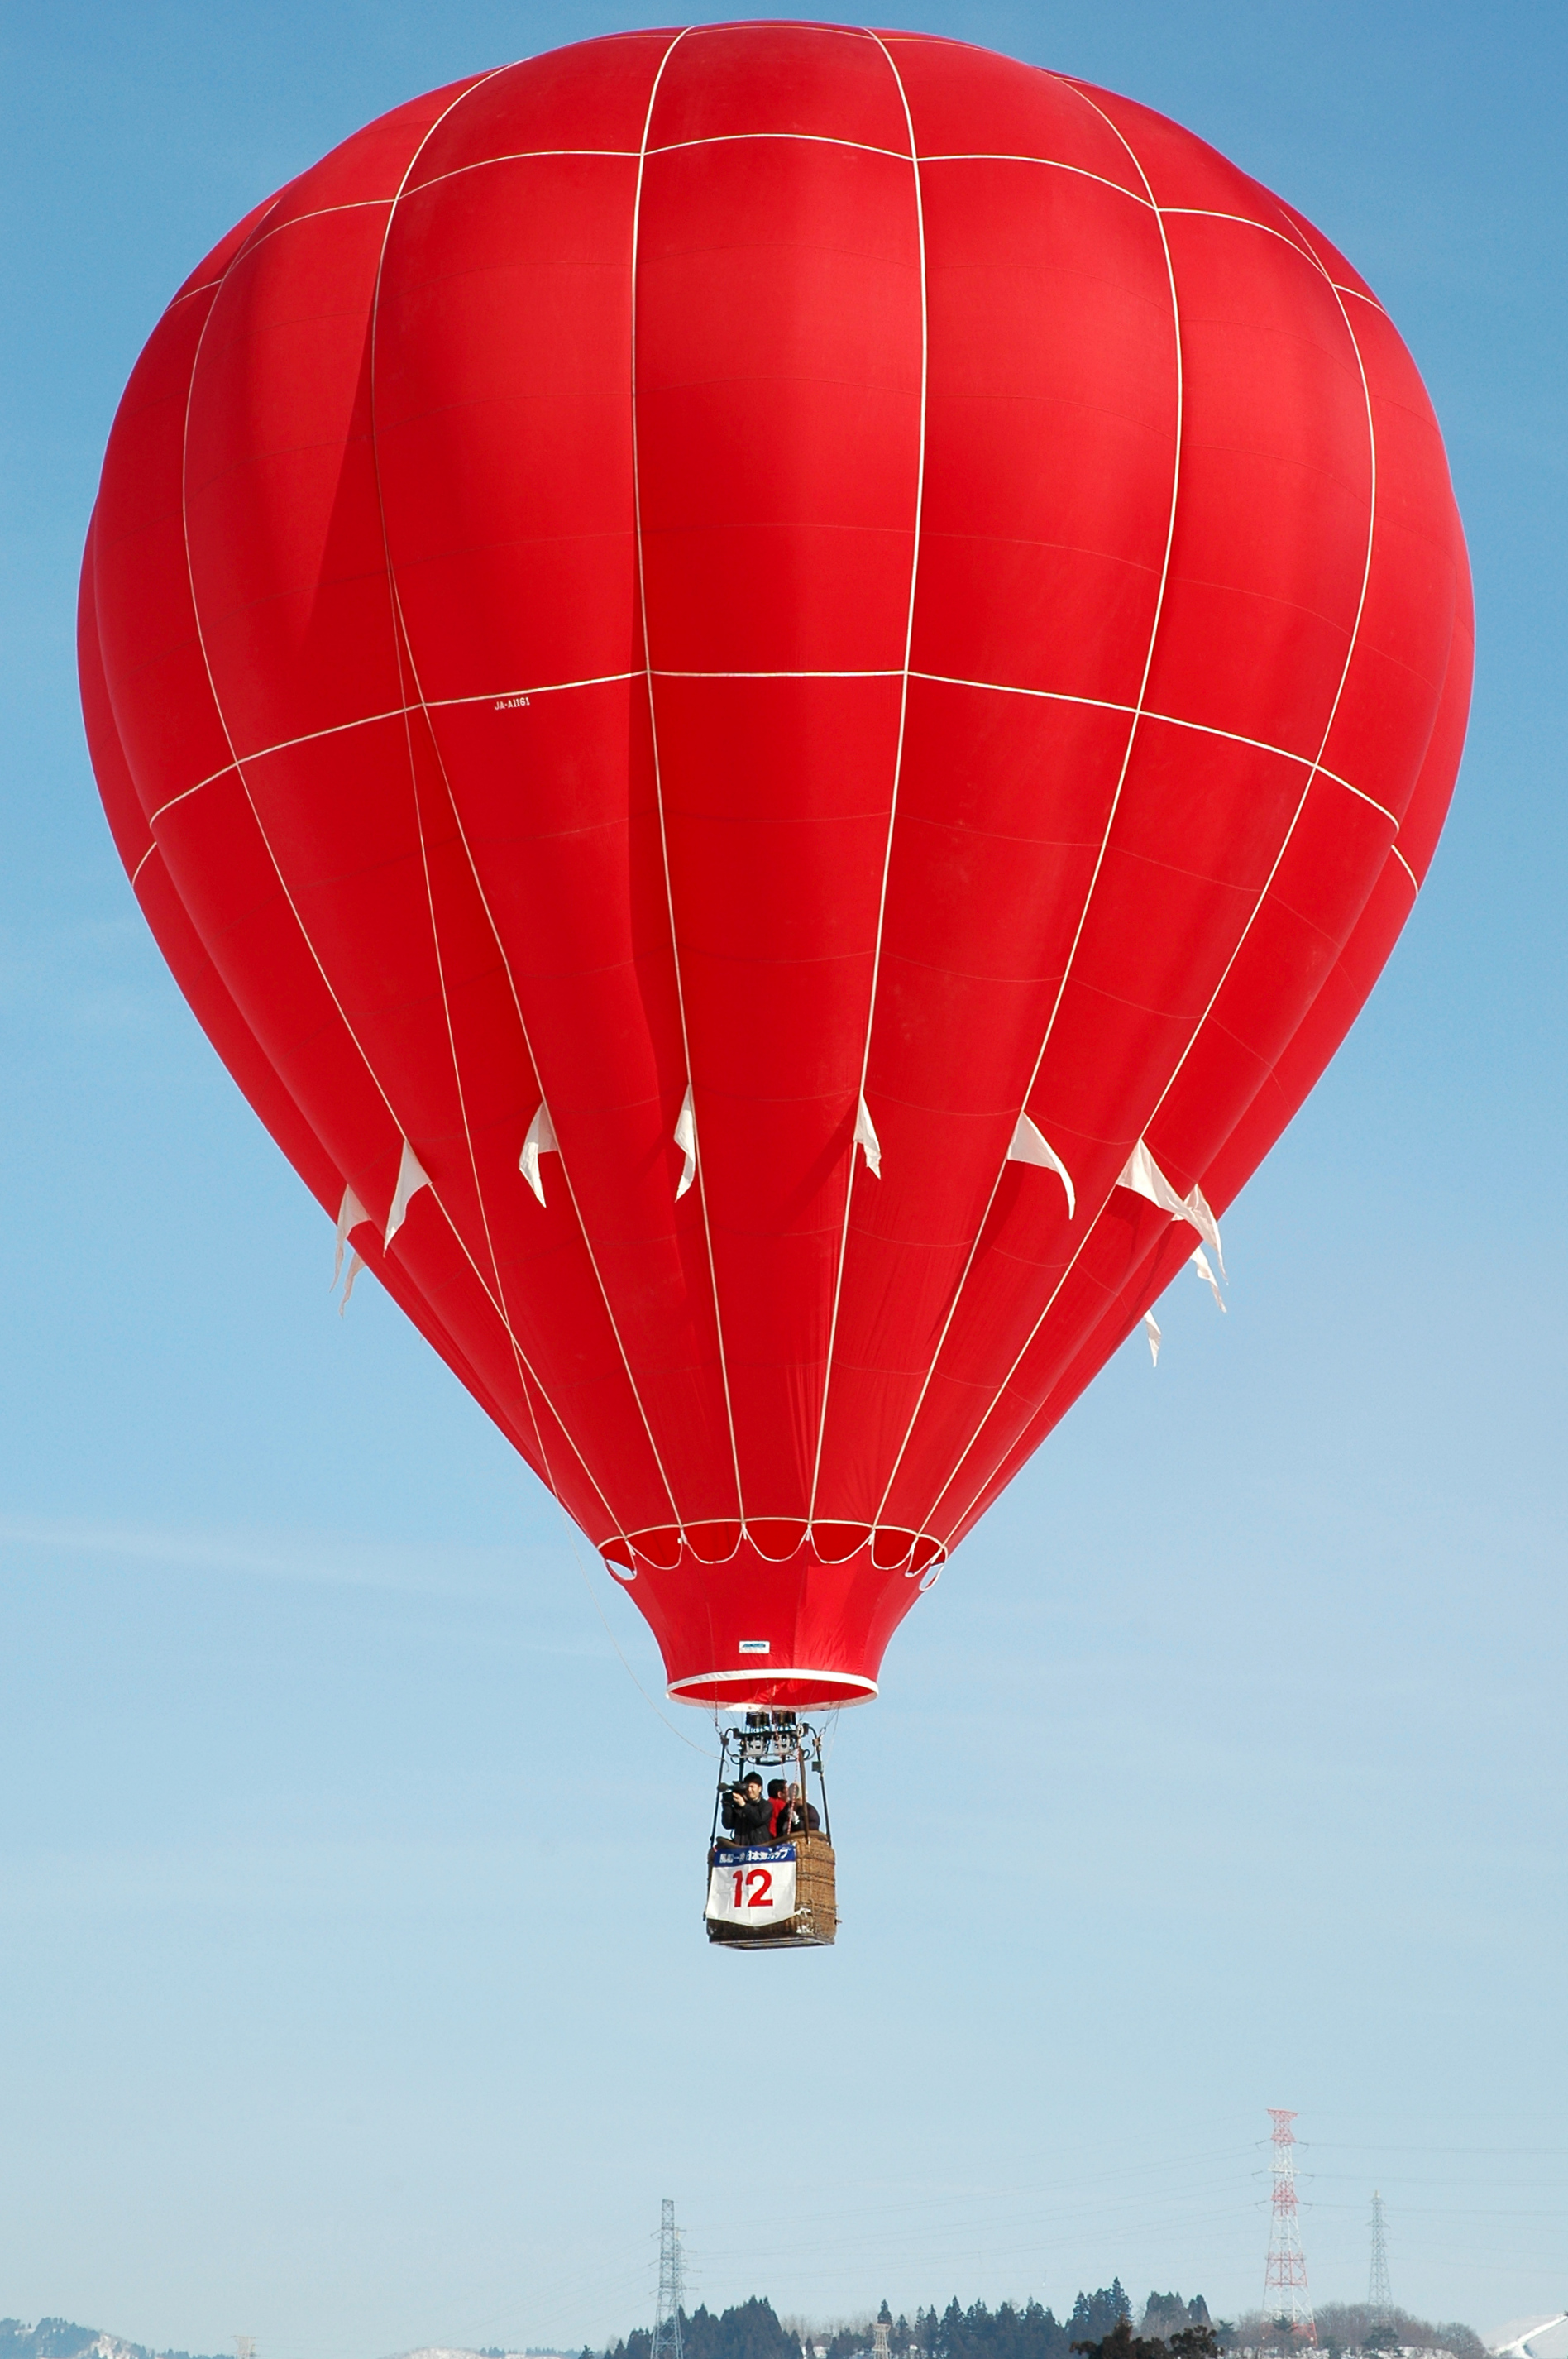 Image Hot Air Balloon - KibrisPDR